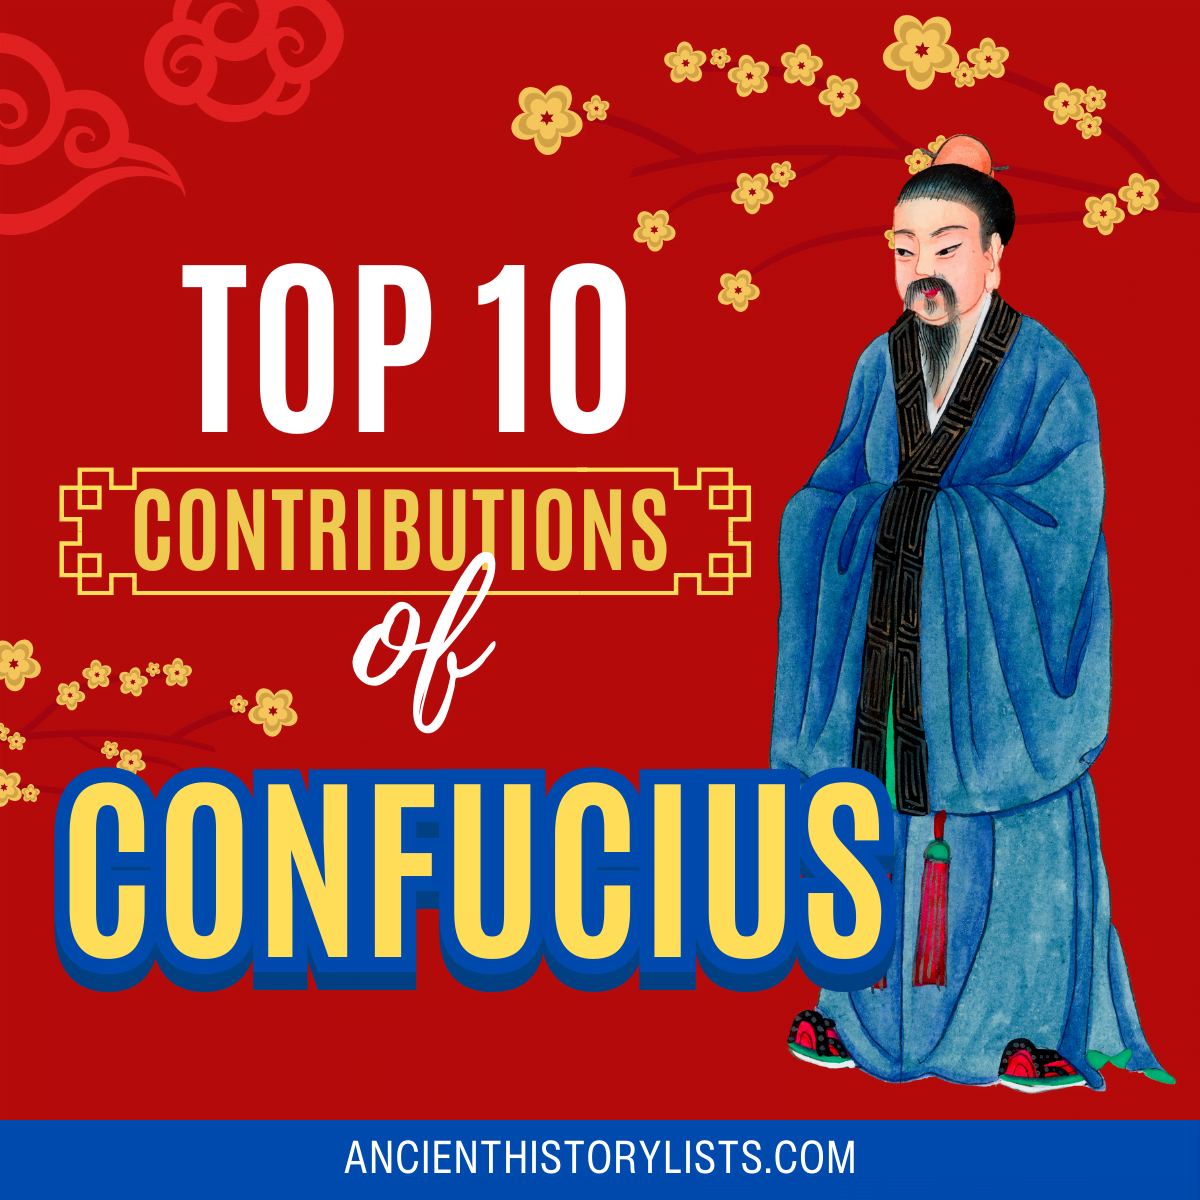 Contributions of Confucius